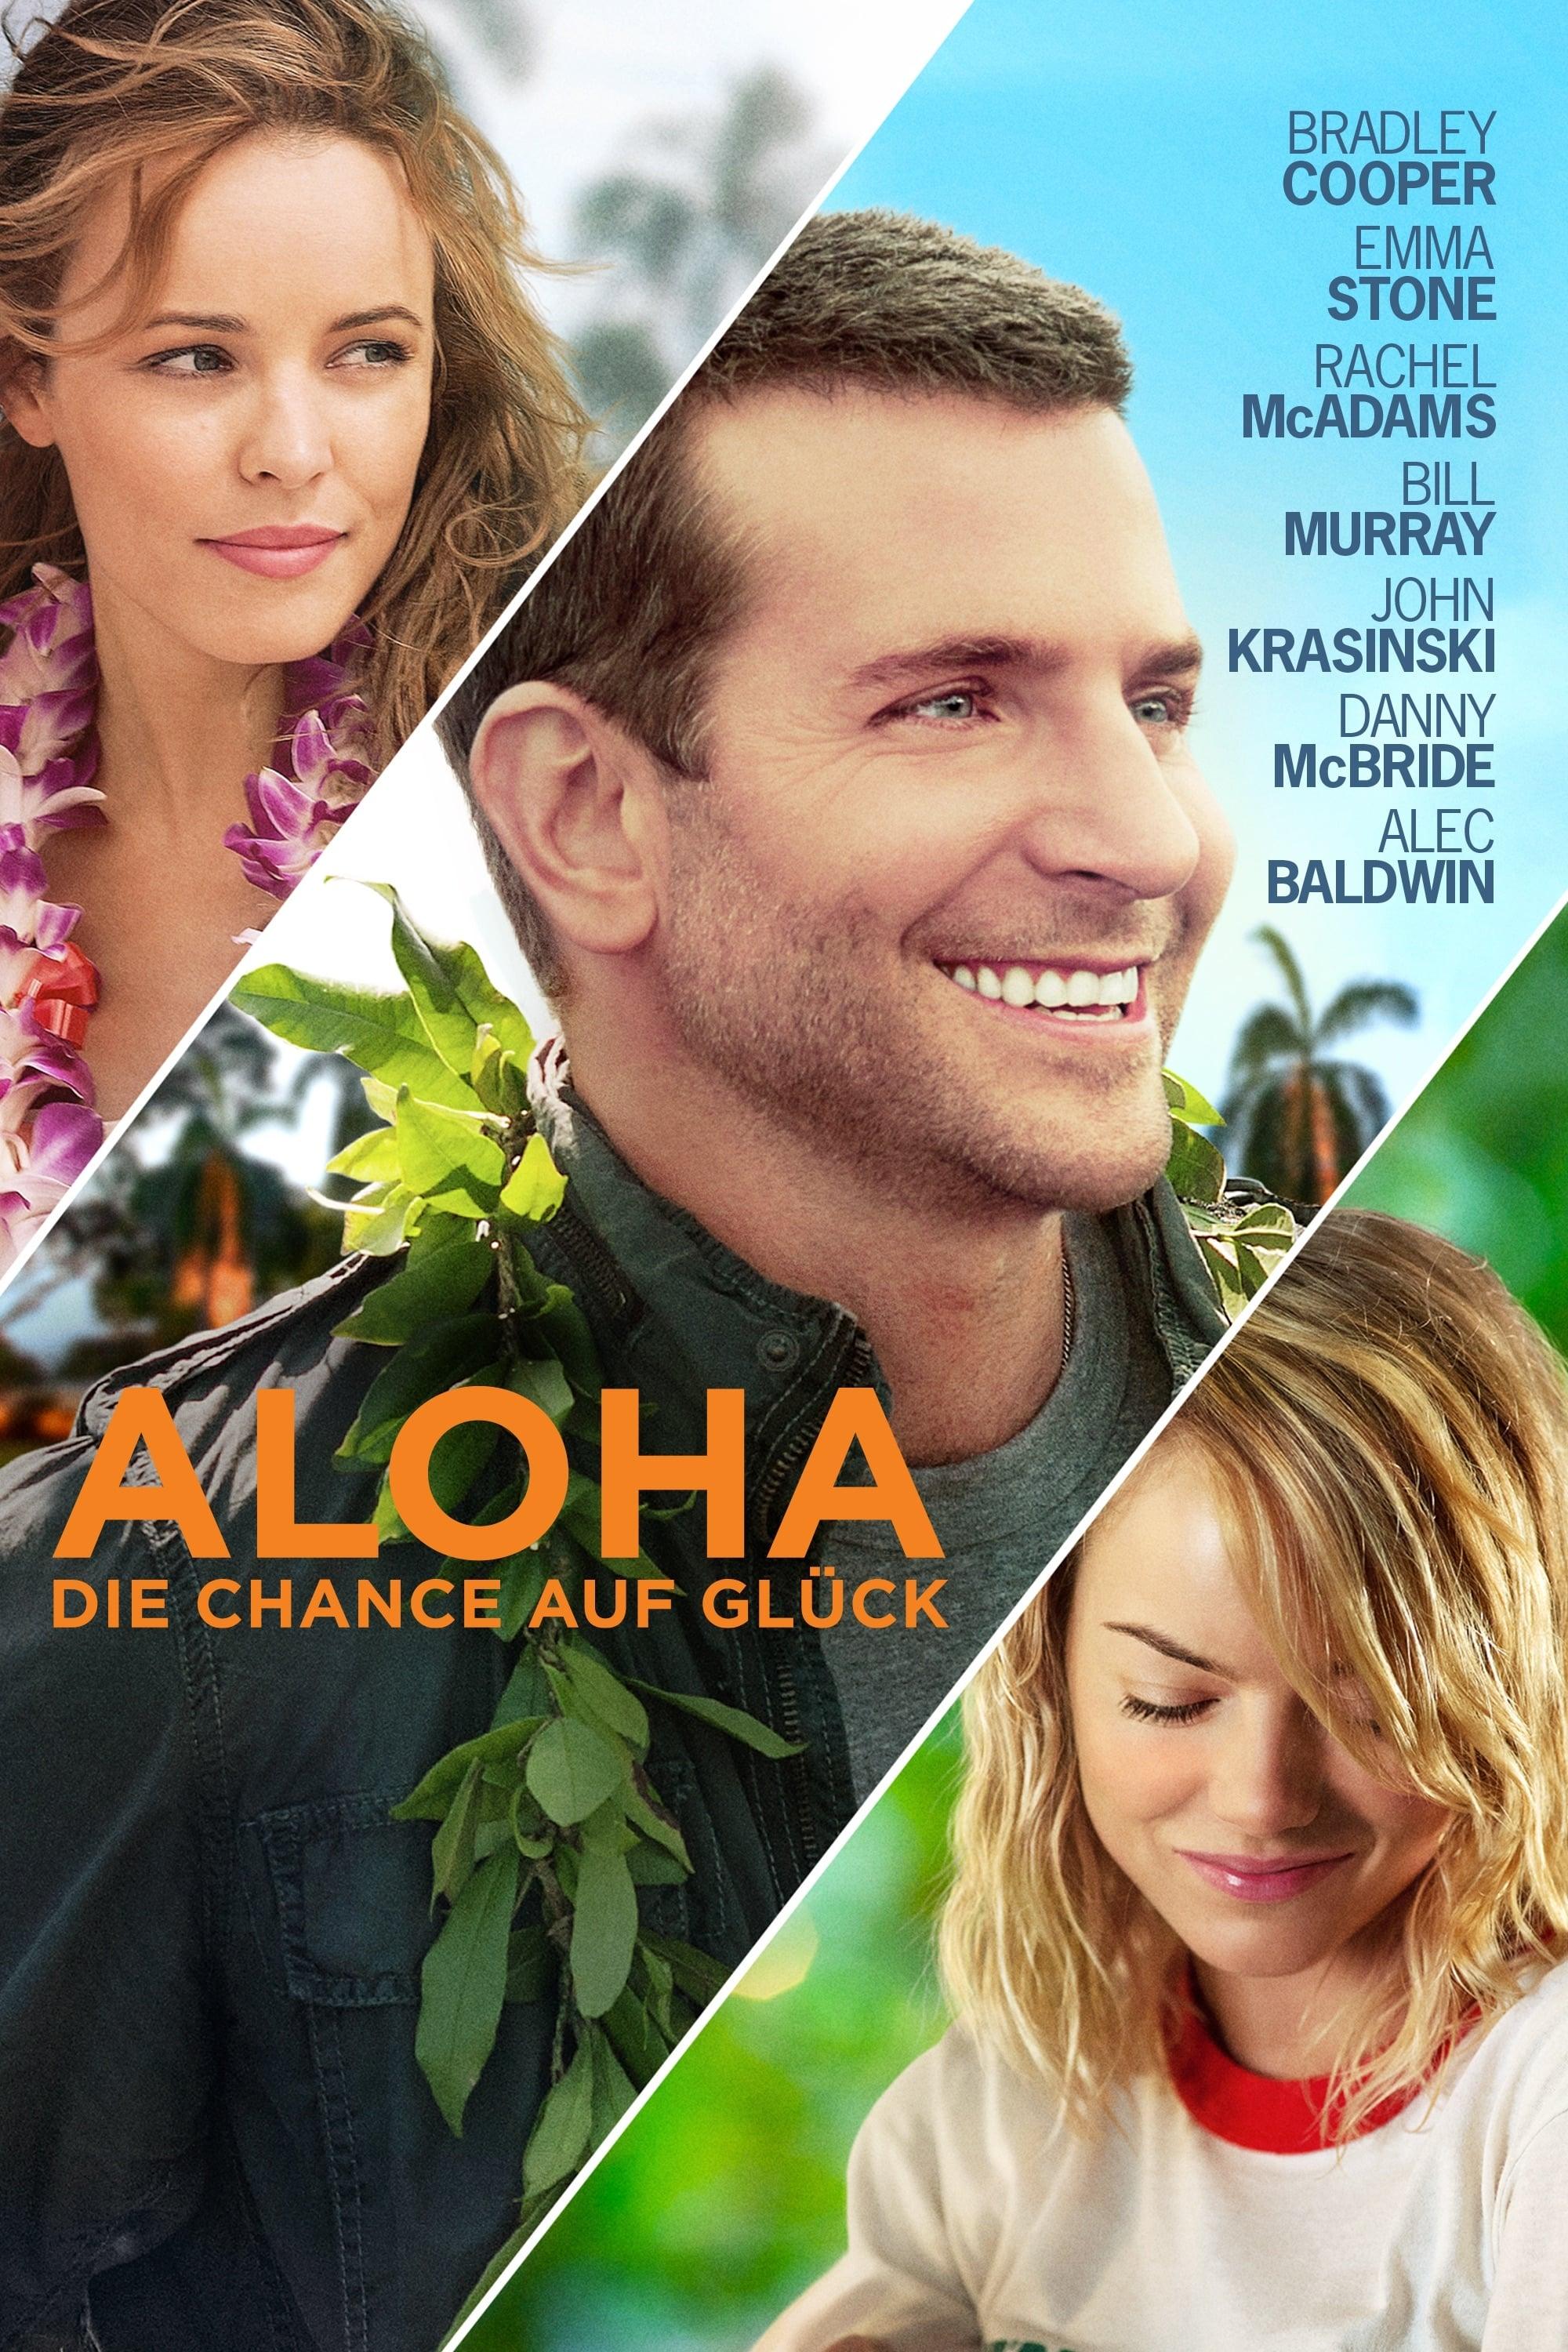 Aloha - Die Chance auf Glück poster